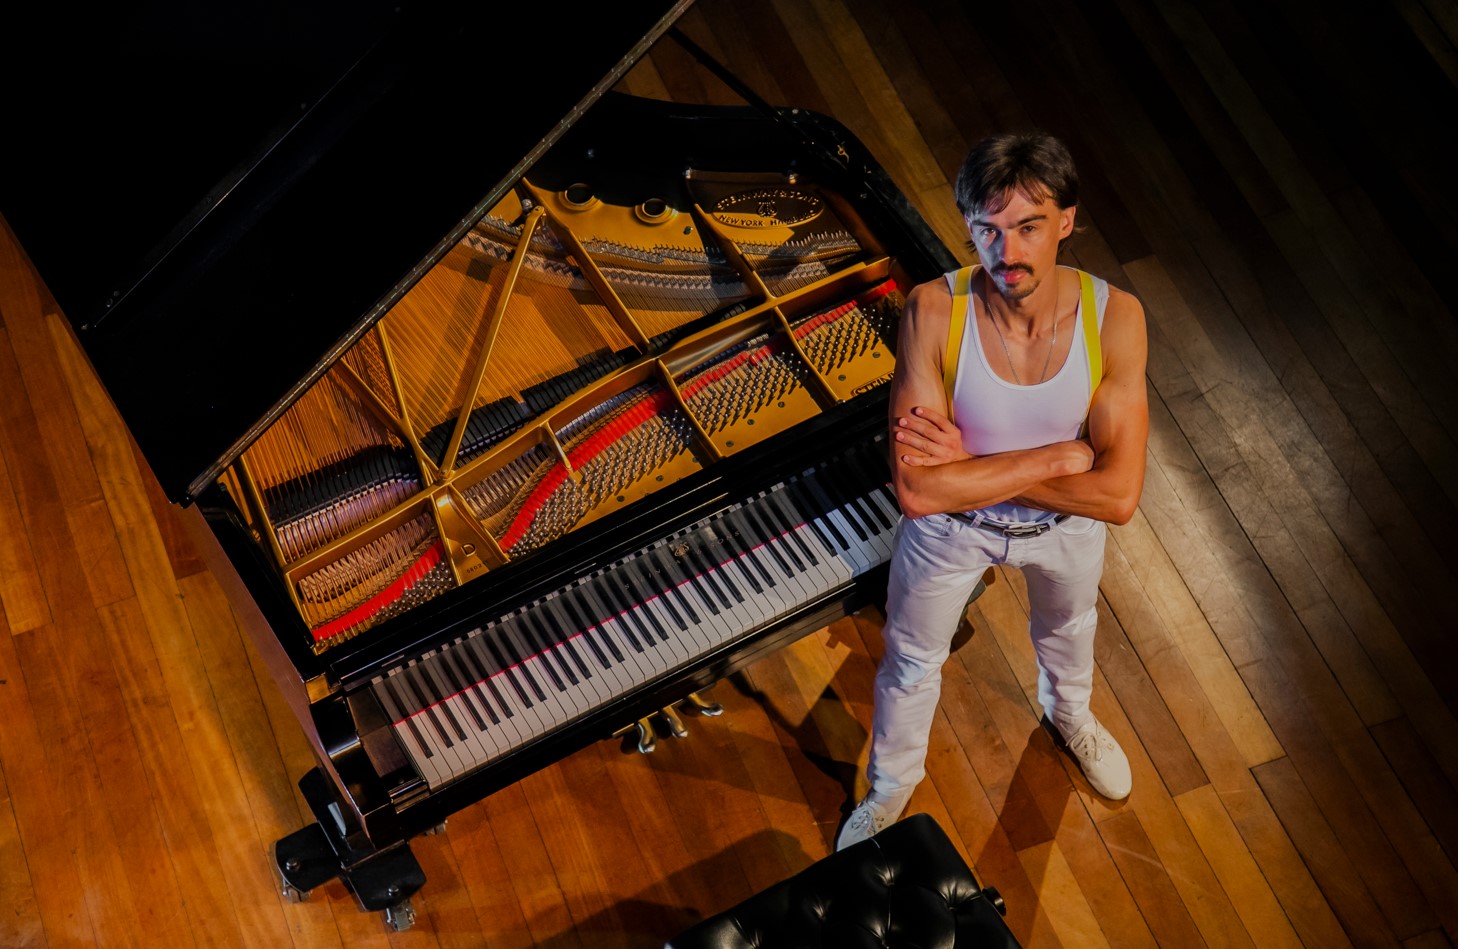 Espetáculo "Rock ao Piano" chega a Goiânia, com homenagem à banda Queen